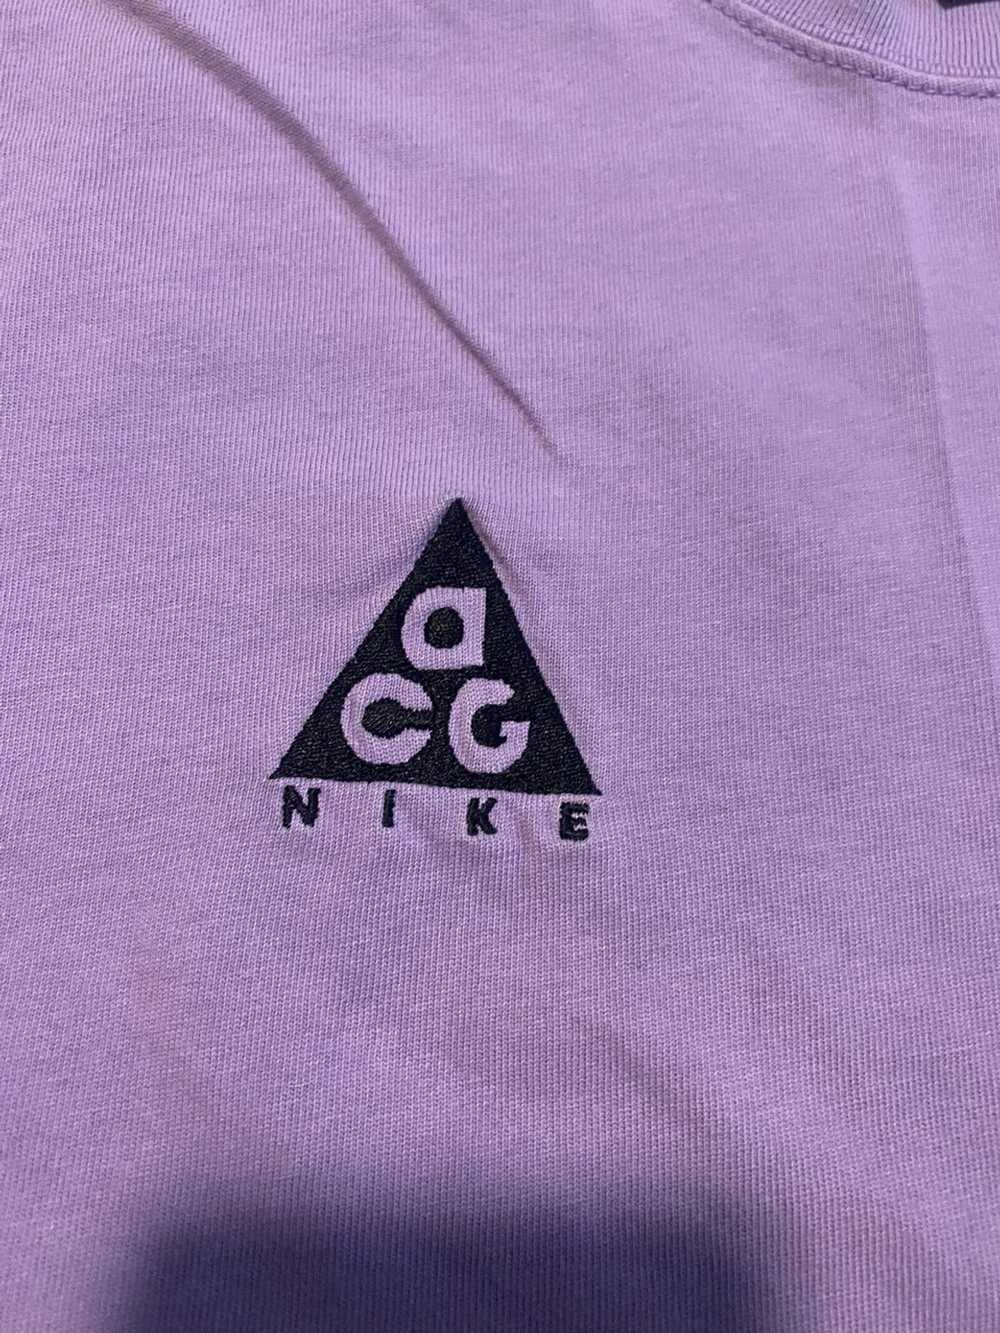 Nike ACG Nike ACG T-Shirt - image 3